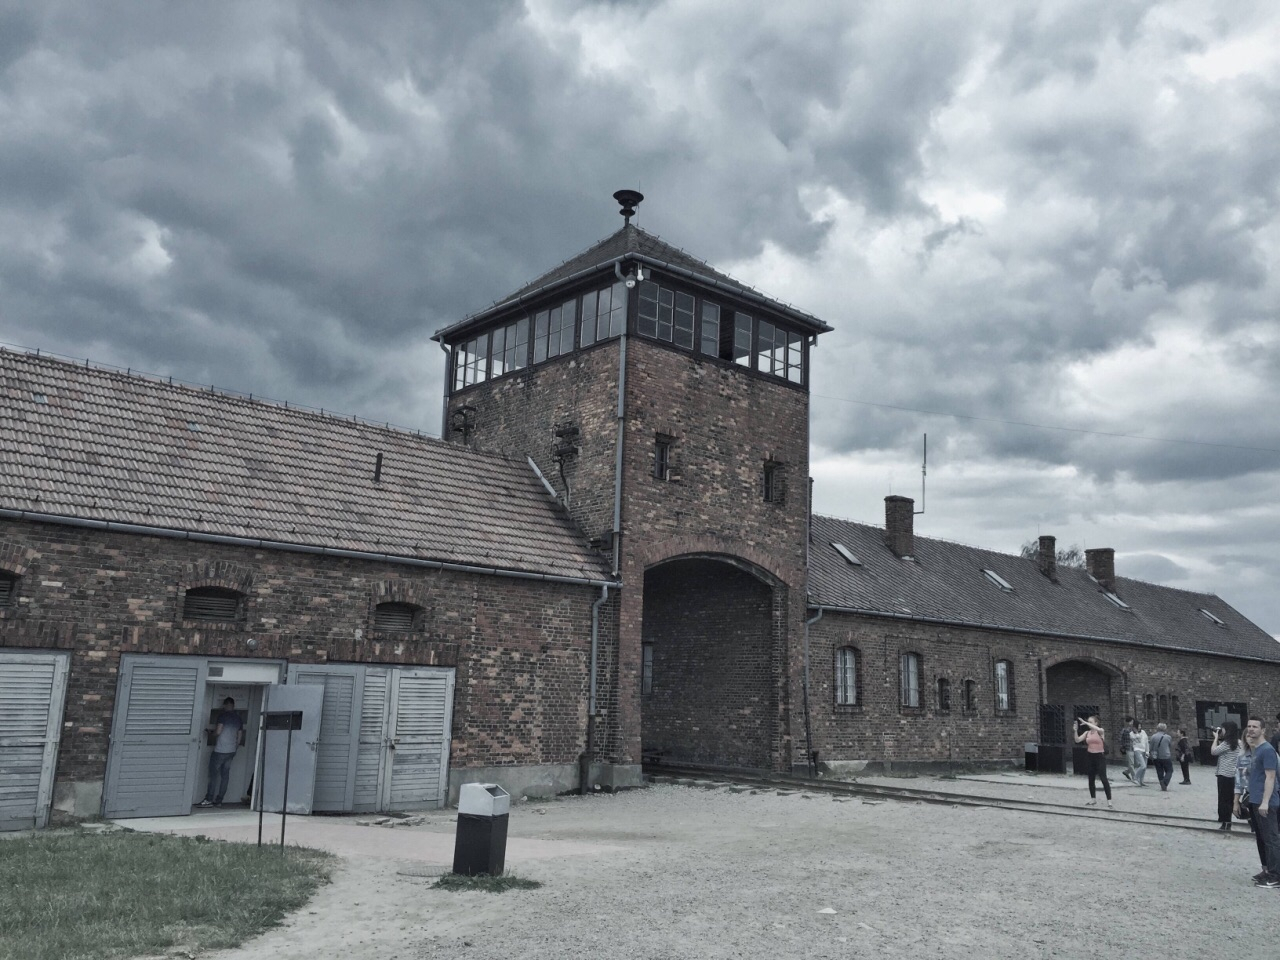 纳粹集中营幸存者回忆:我靠这些活下去